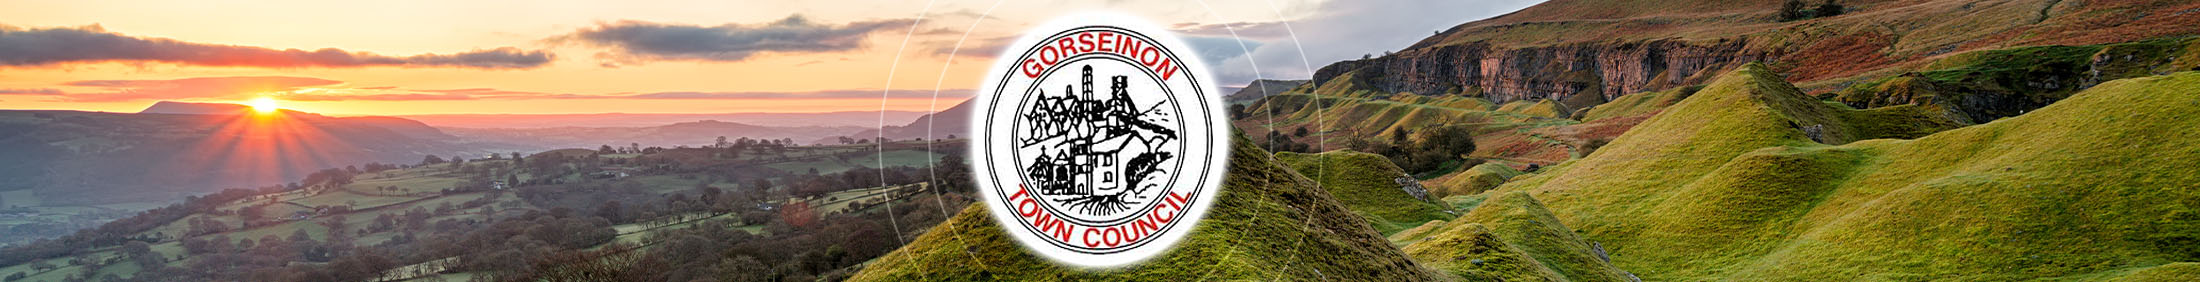 Header Image for Gorseinon Town Council